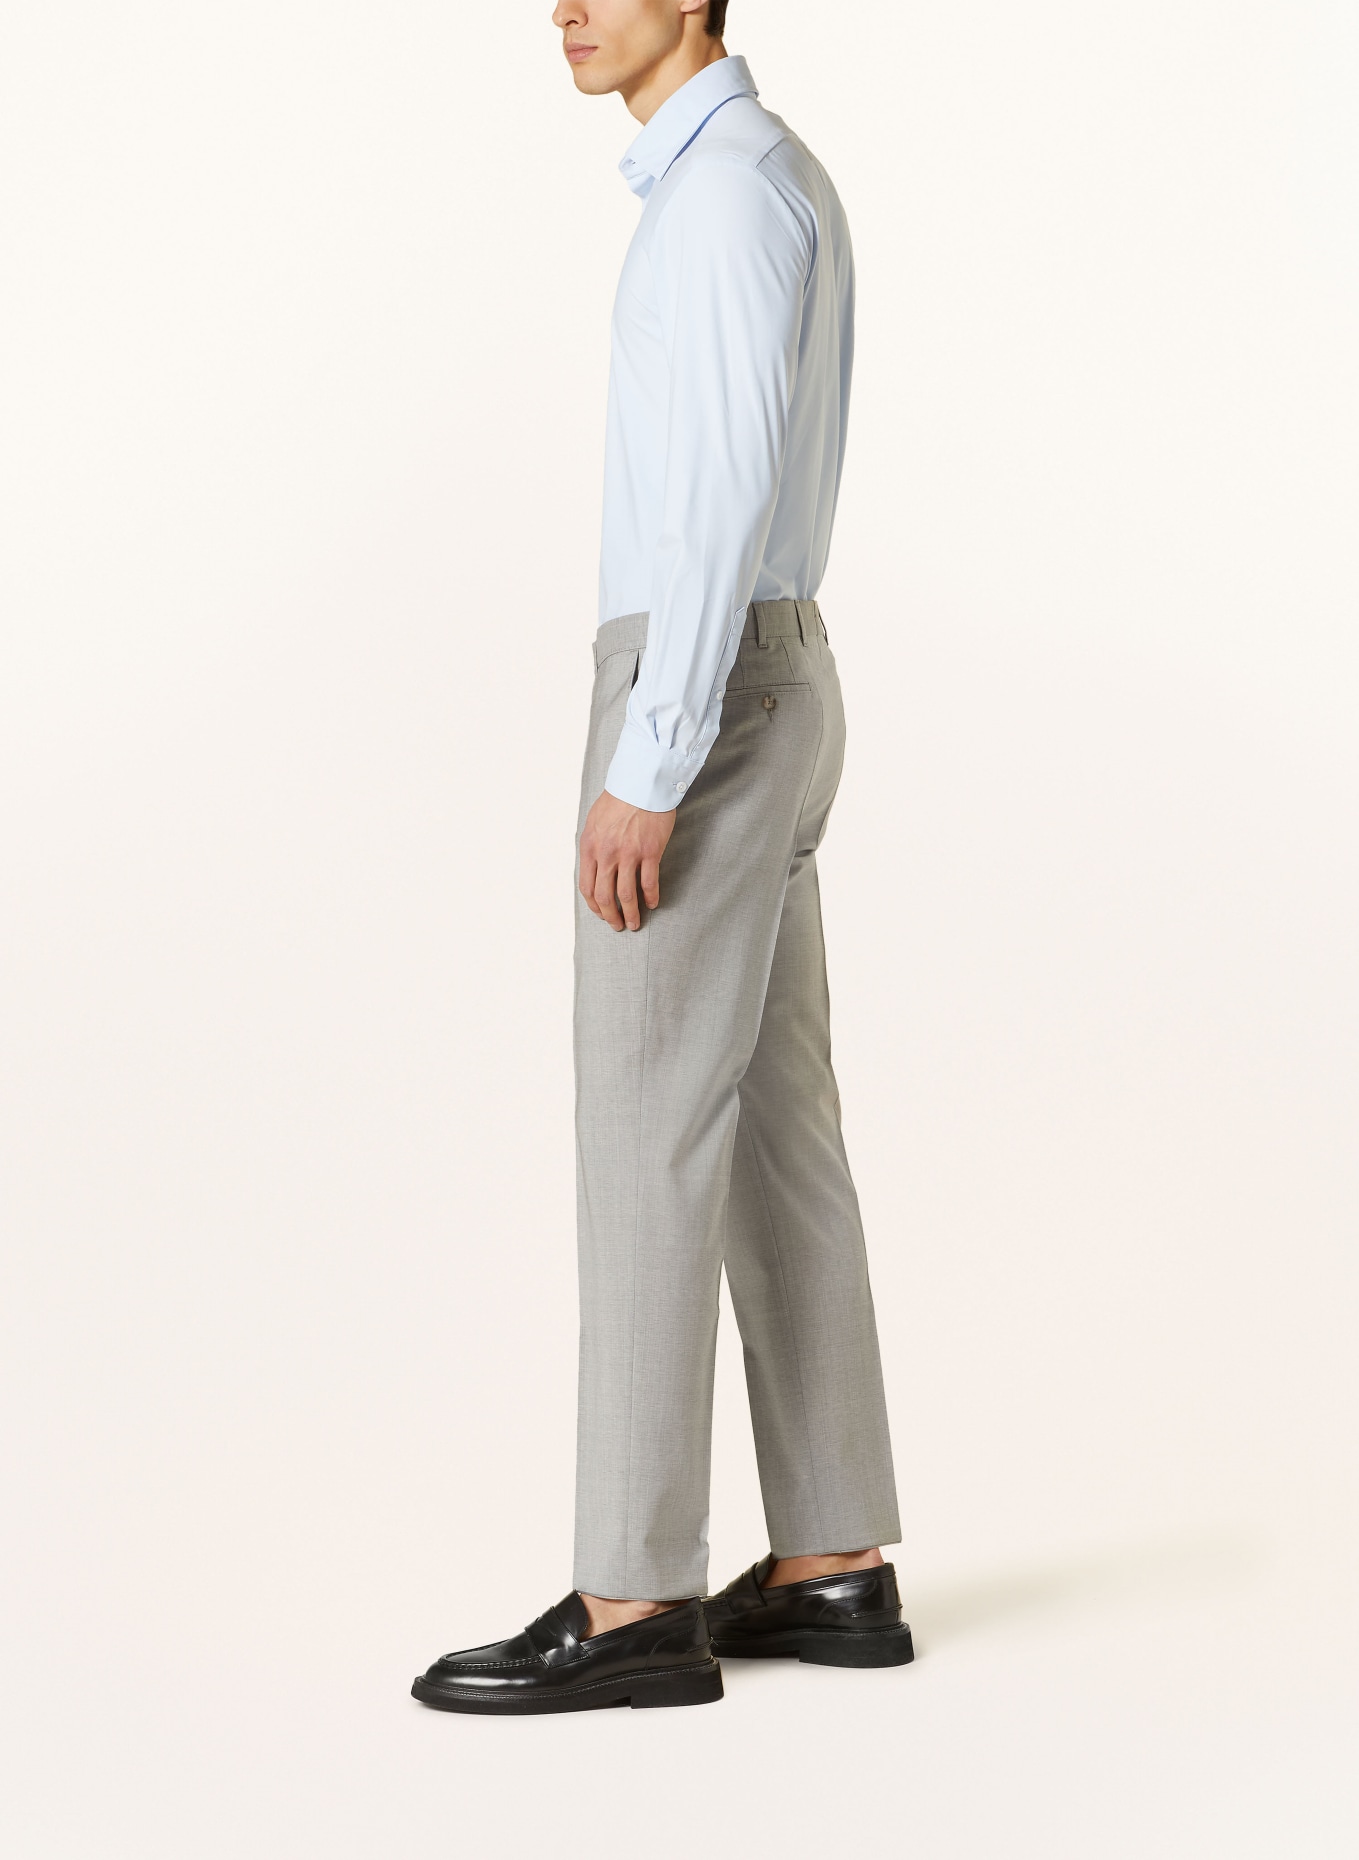 EDUARD DRESSLER Suit trousers shaped fit, Color: 013 HELLGRAU (Image 5)